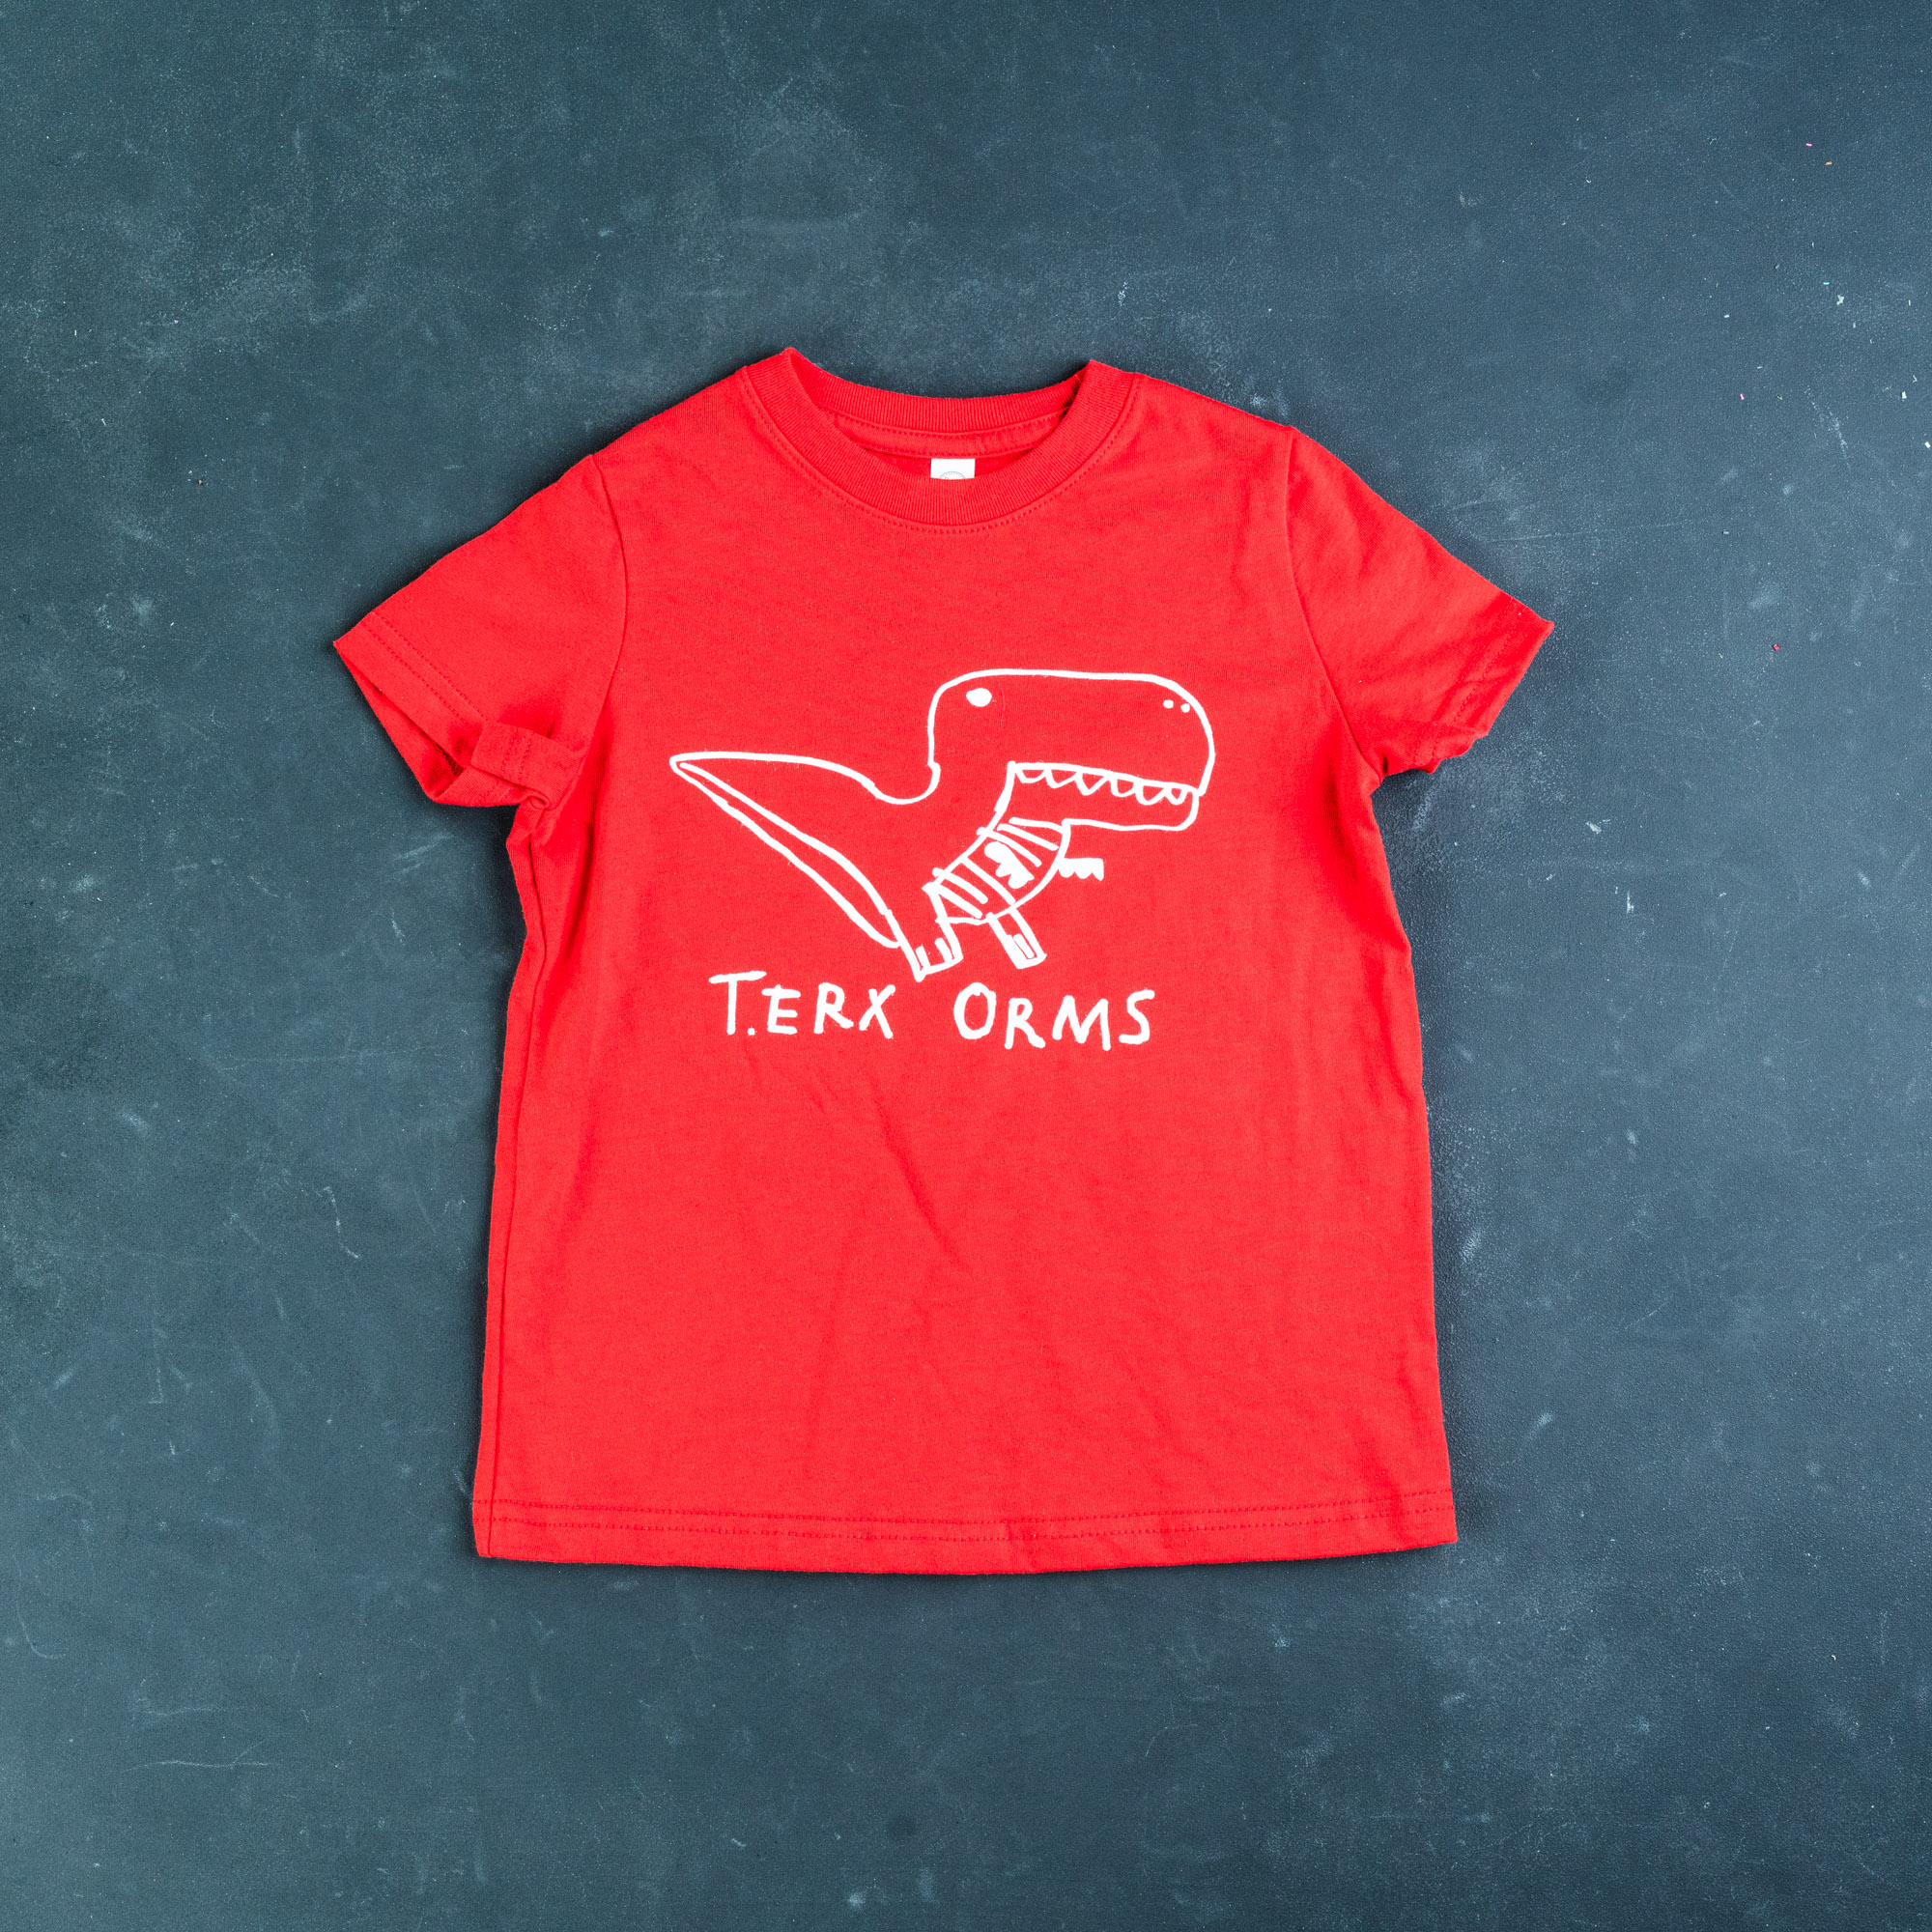 TERX ORMS Shirt – Kids – T.REX ARMS